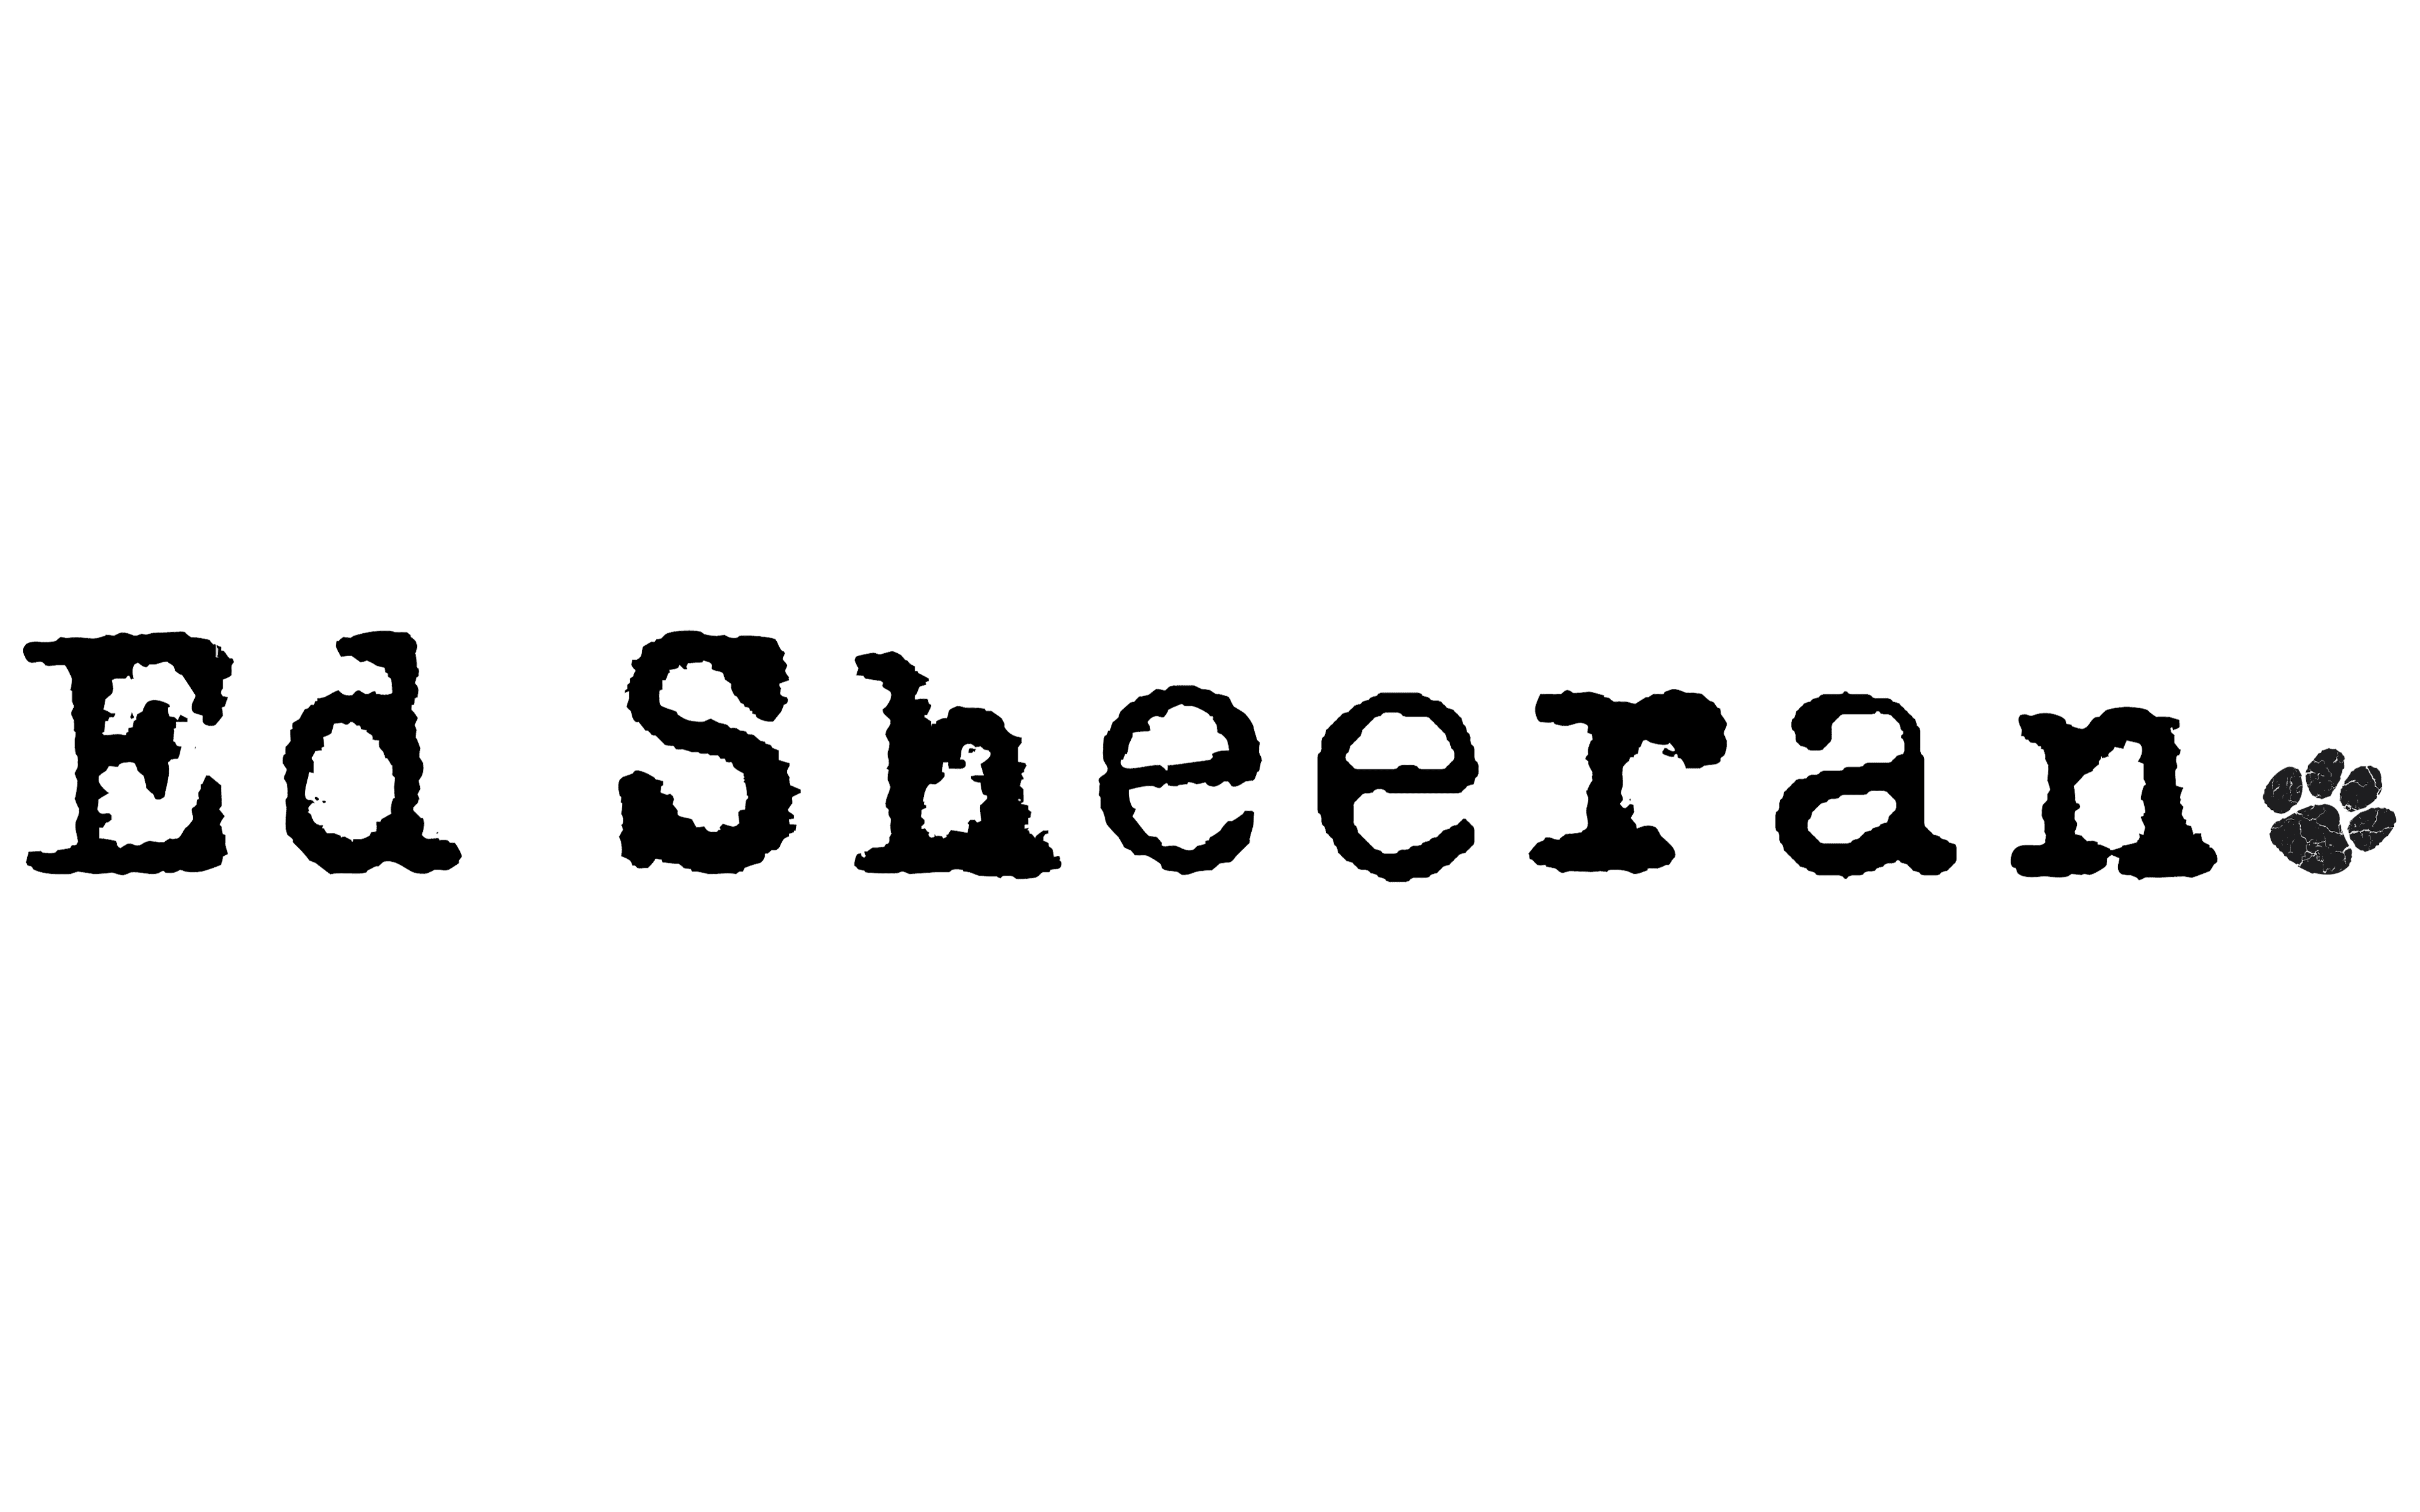 Ed Sheeran Logo And Symbol Meaning History Png